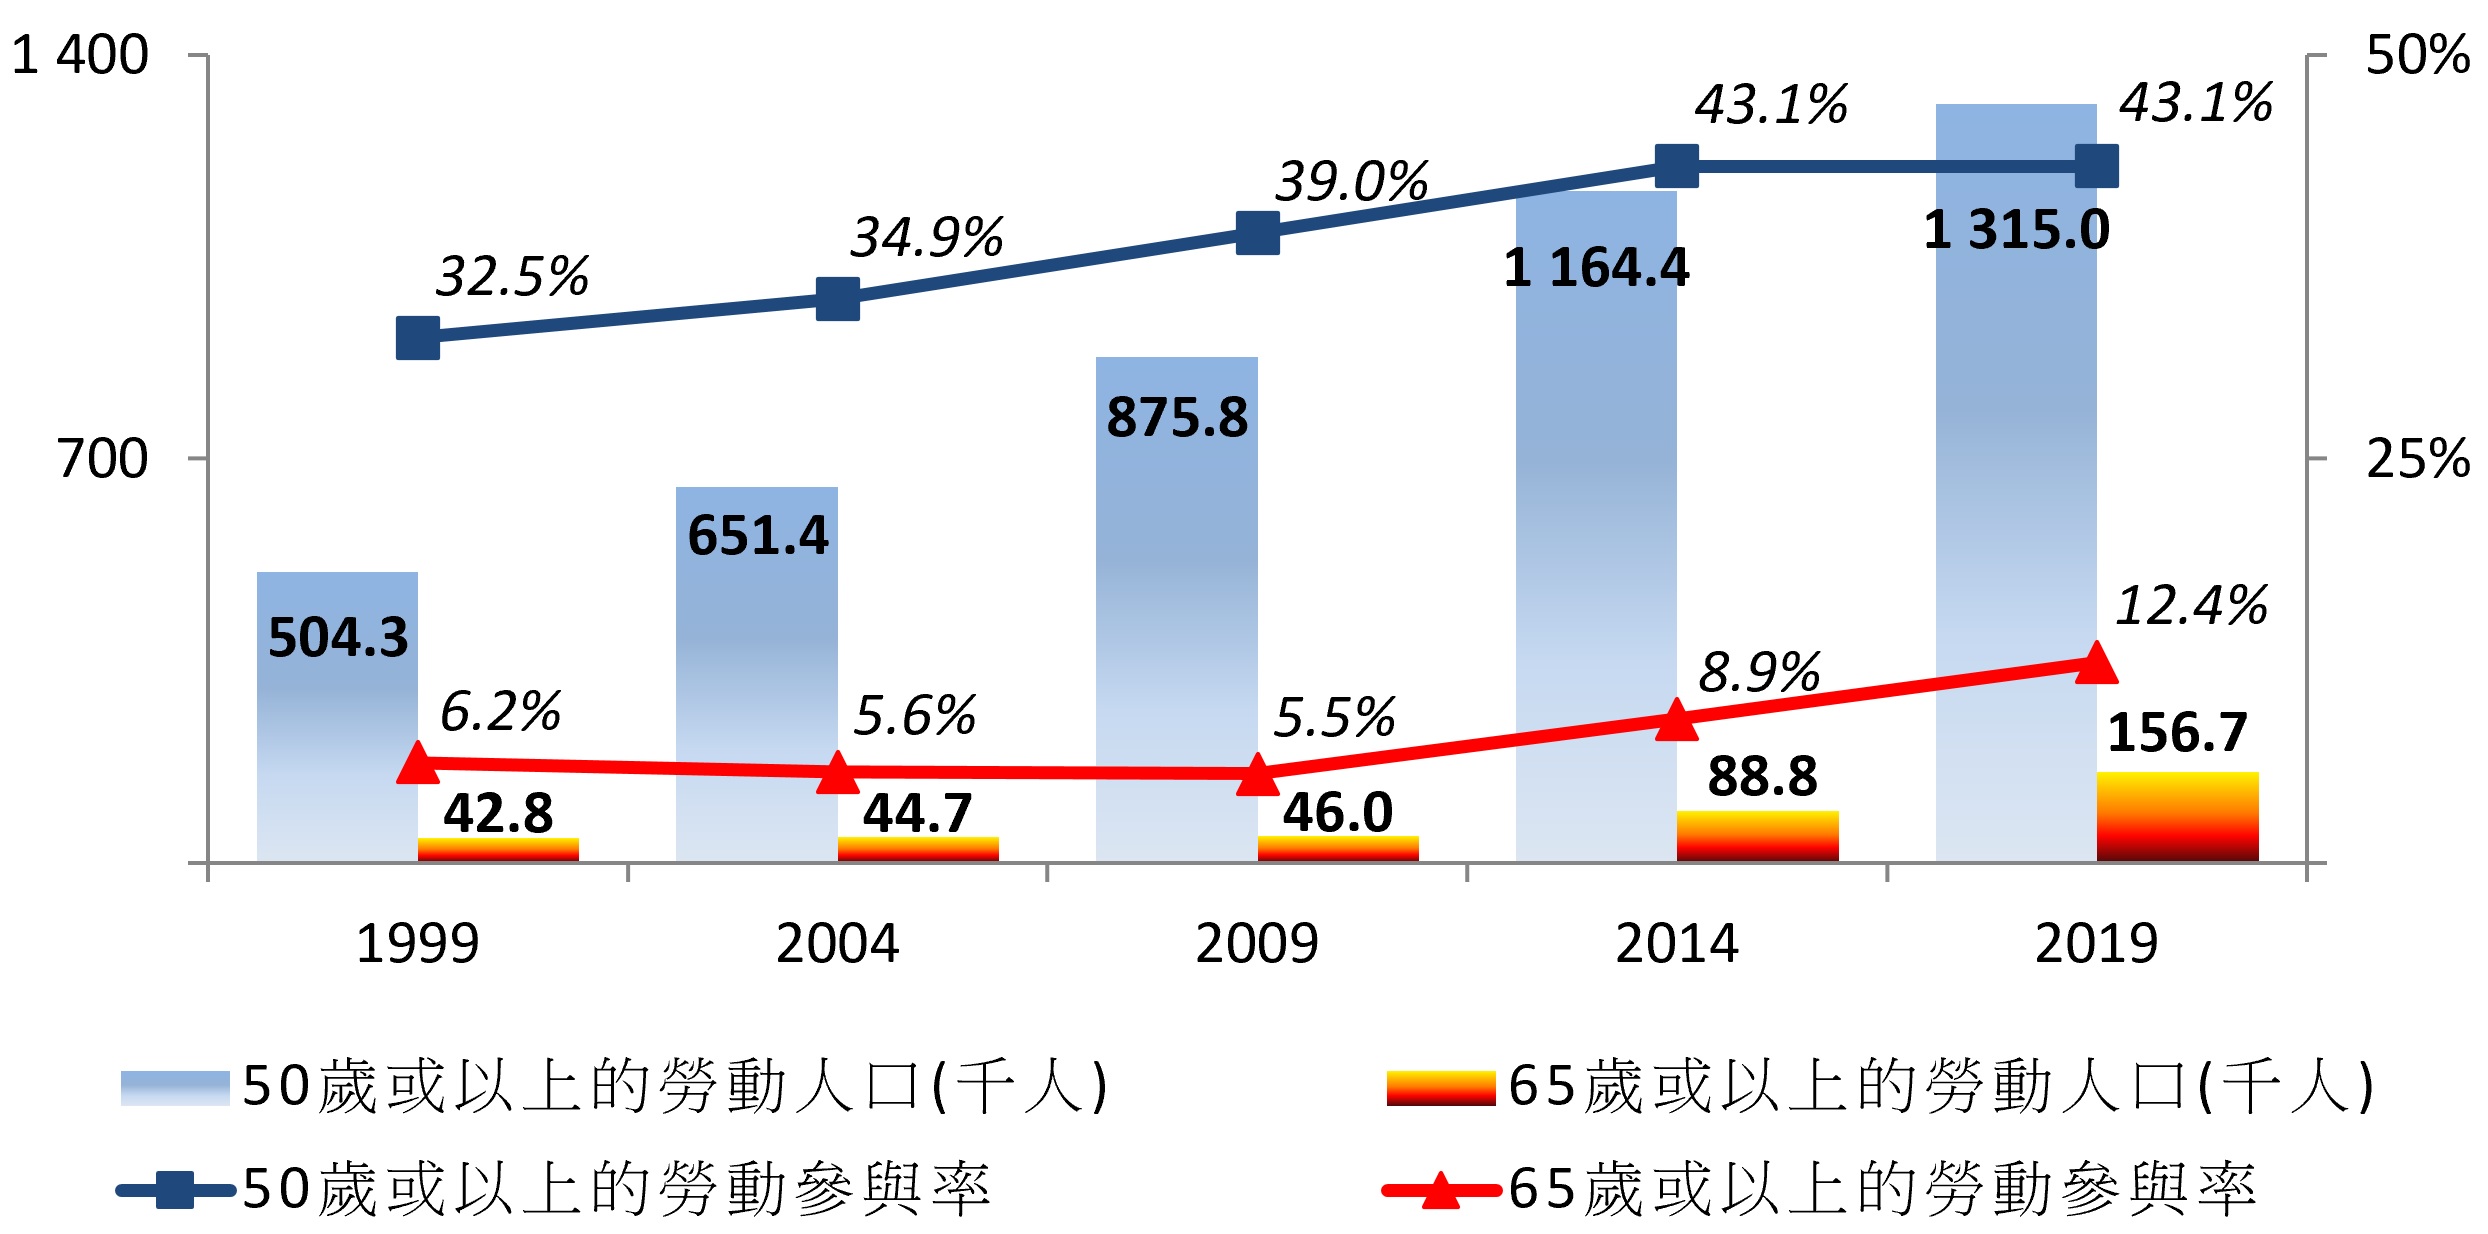 圖1 - 1999年至2019年期間的香港年長人口的勞動參與率